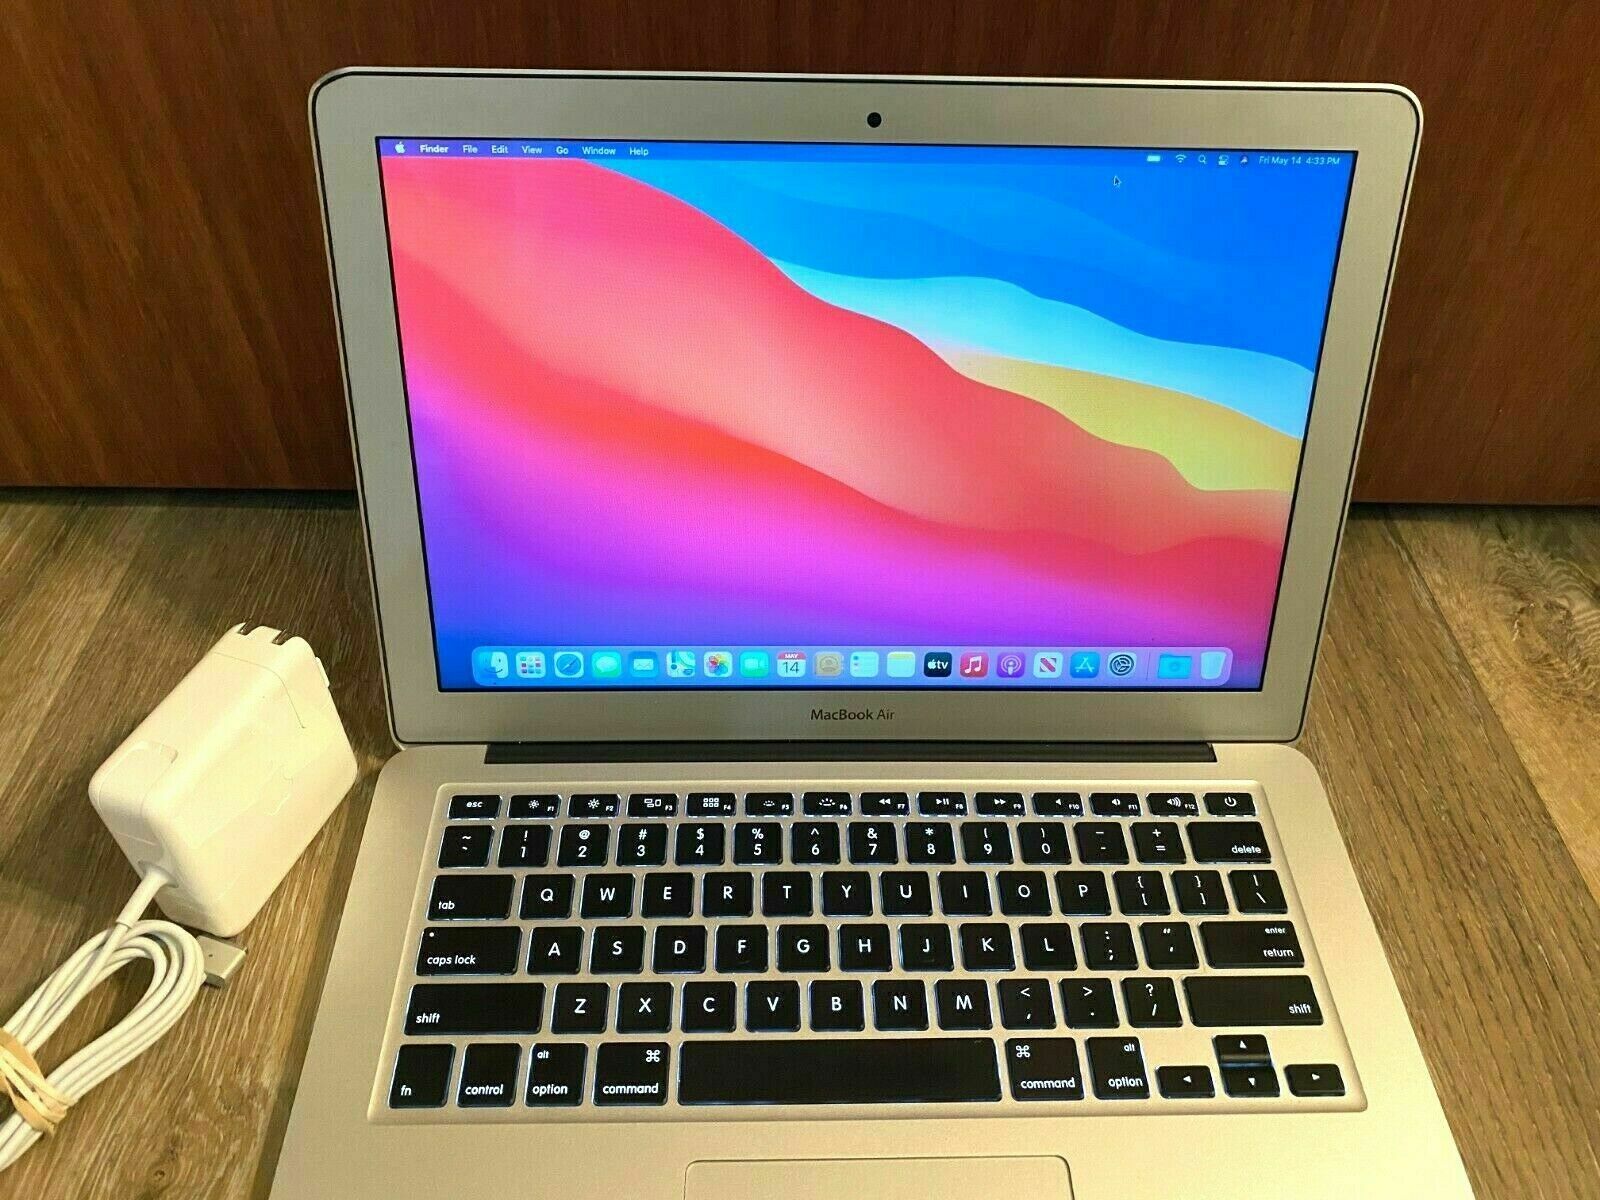 Apple Macbook Air 13" Turbo Boost 2.6ghz I5 1tb Ssd Os-2020 - 3 Year Warranty